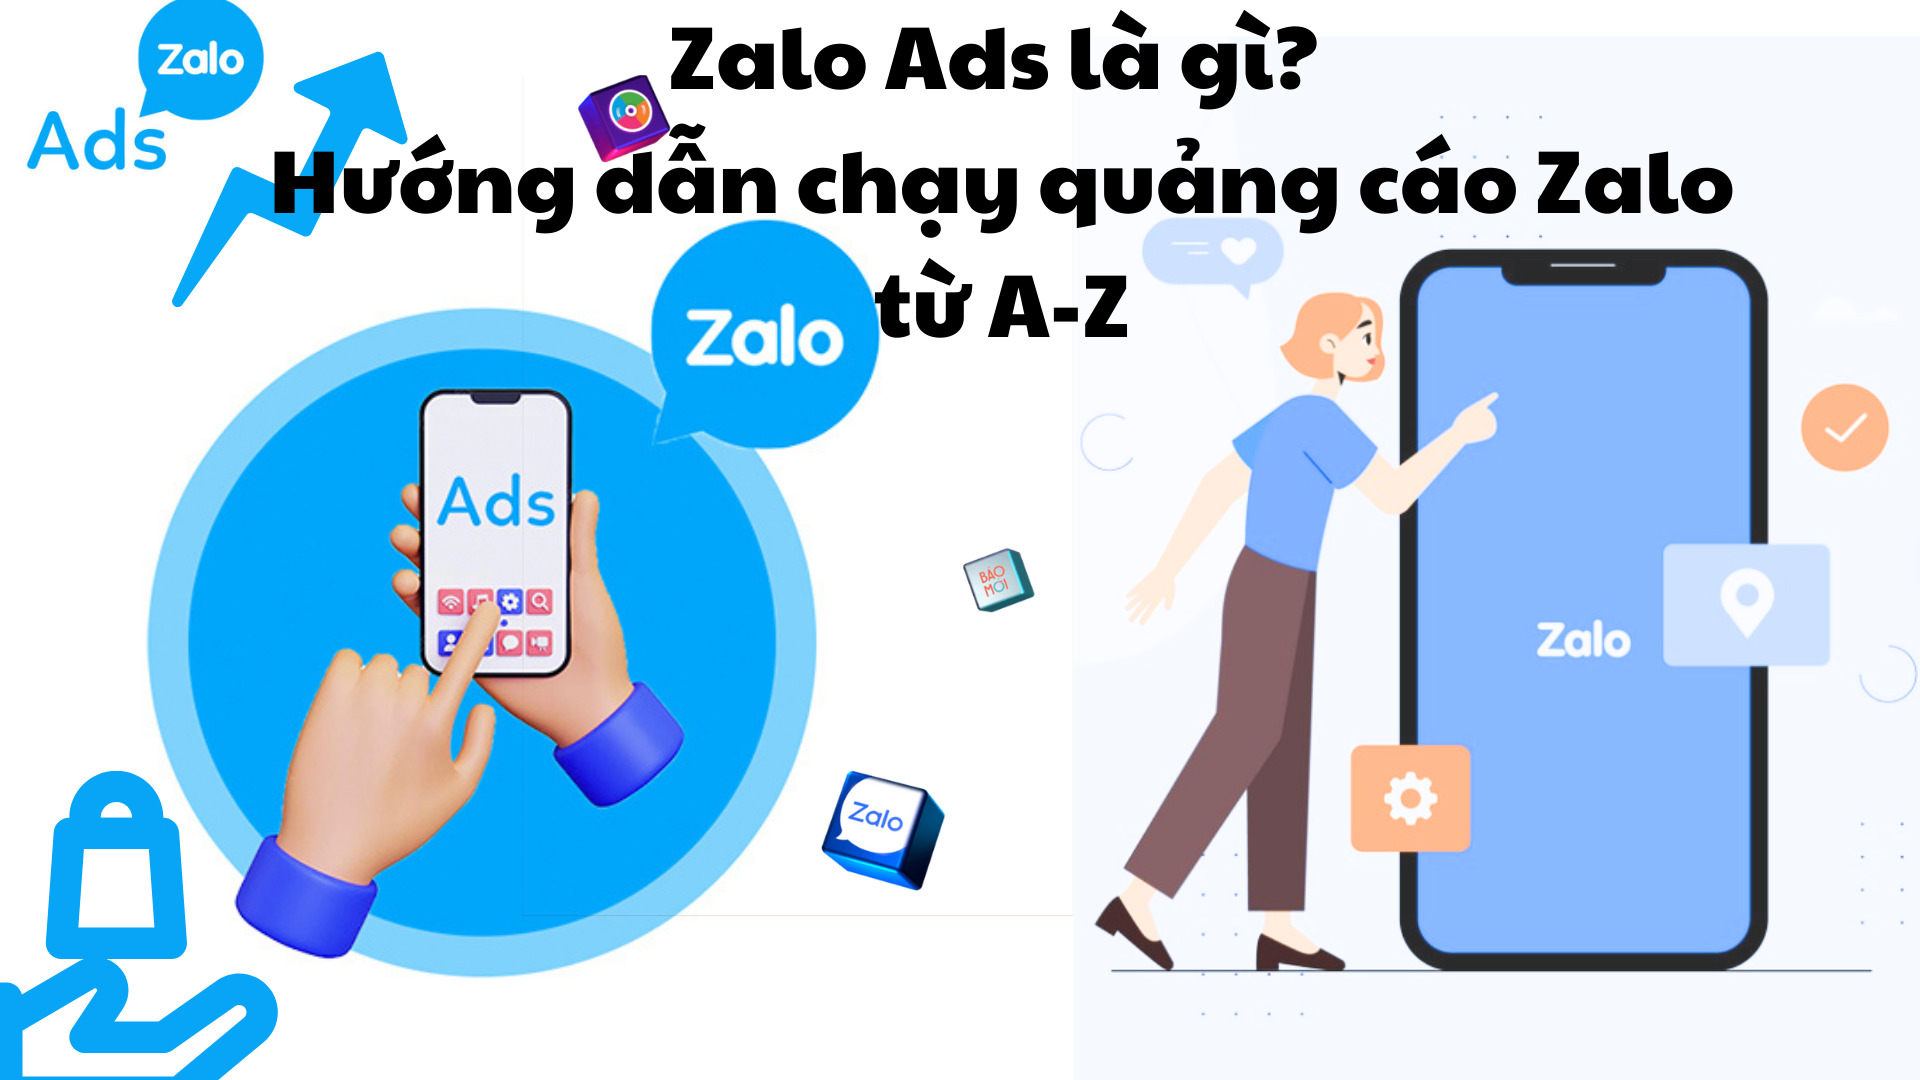 Zalo Ads là gì? Hướng dẫn chạy quảng cáo Zalo từ A-Z